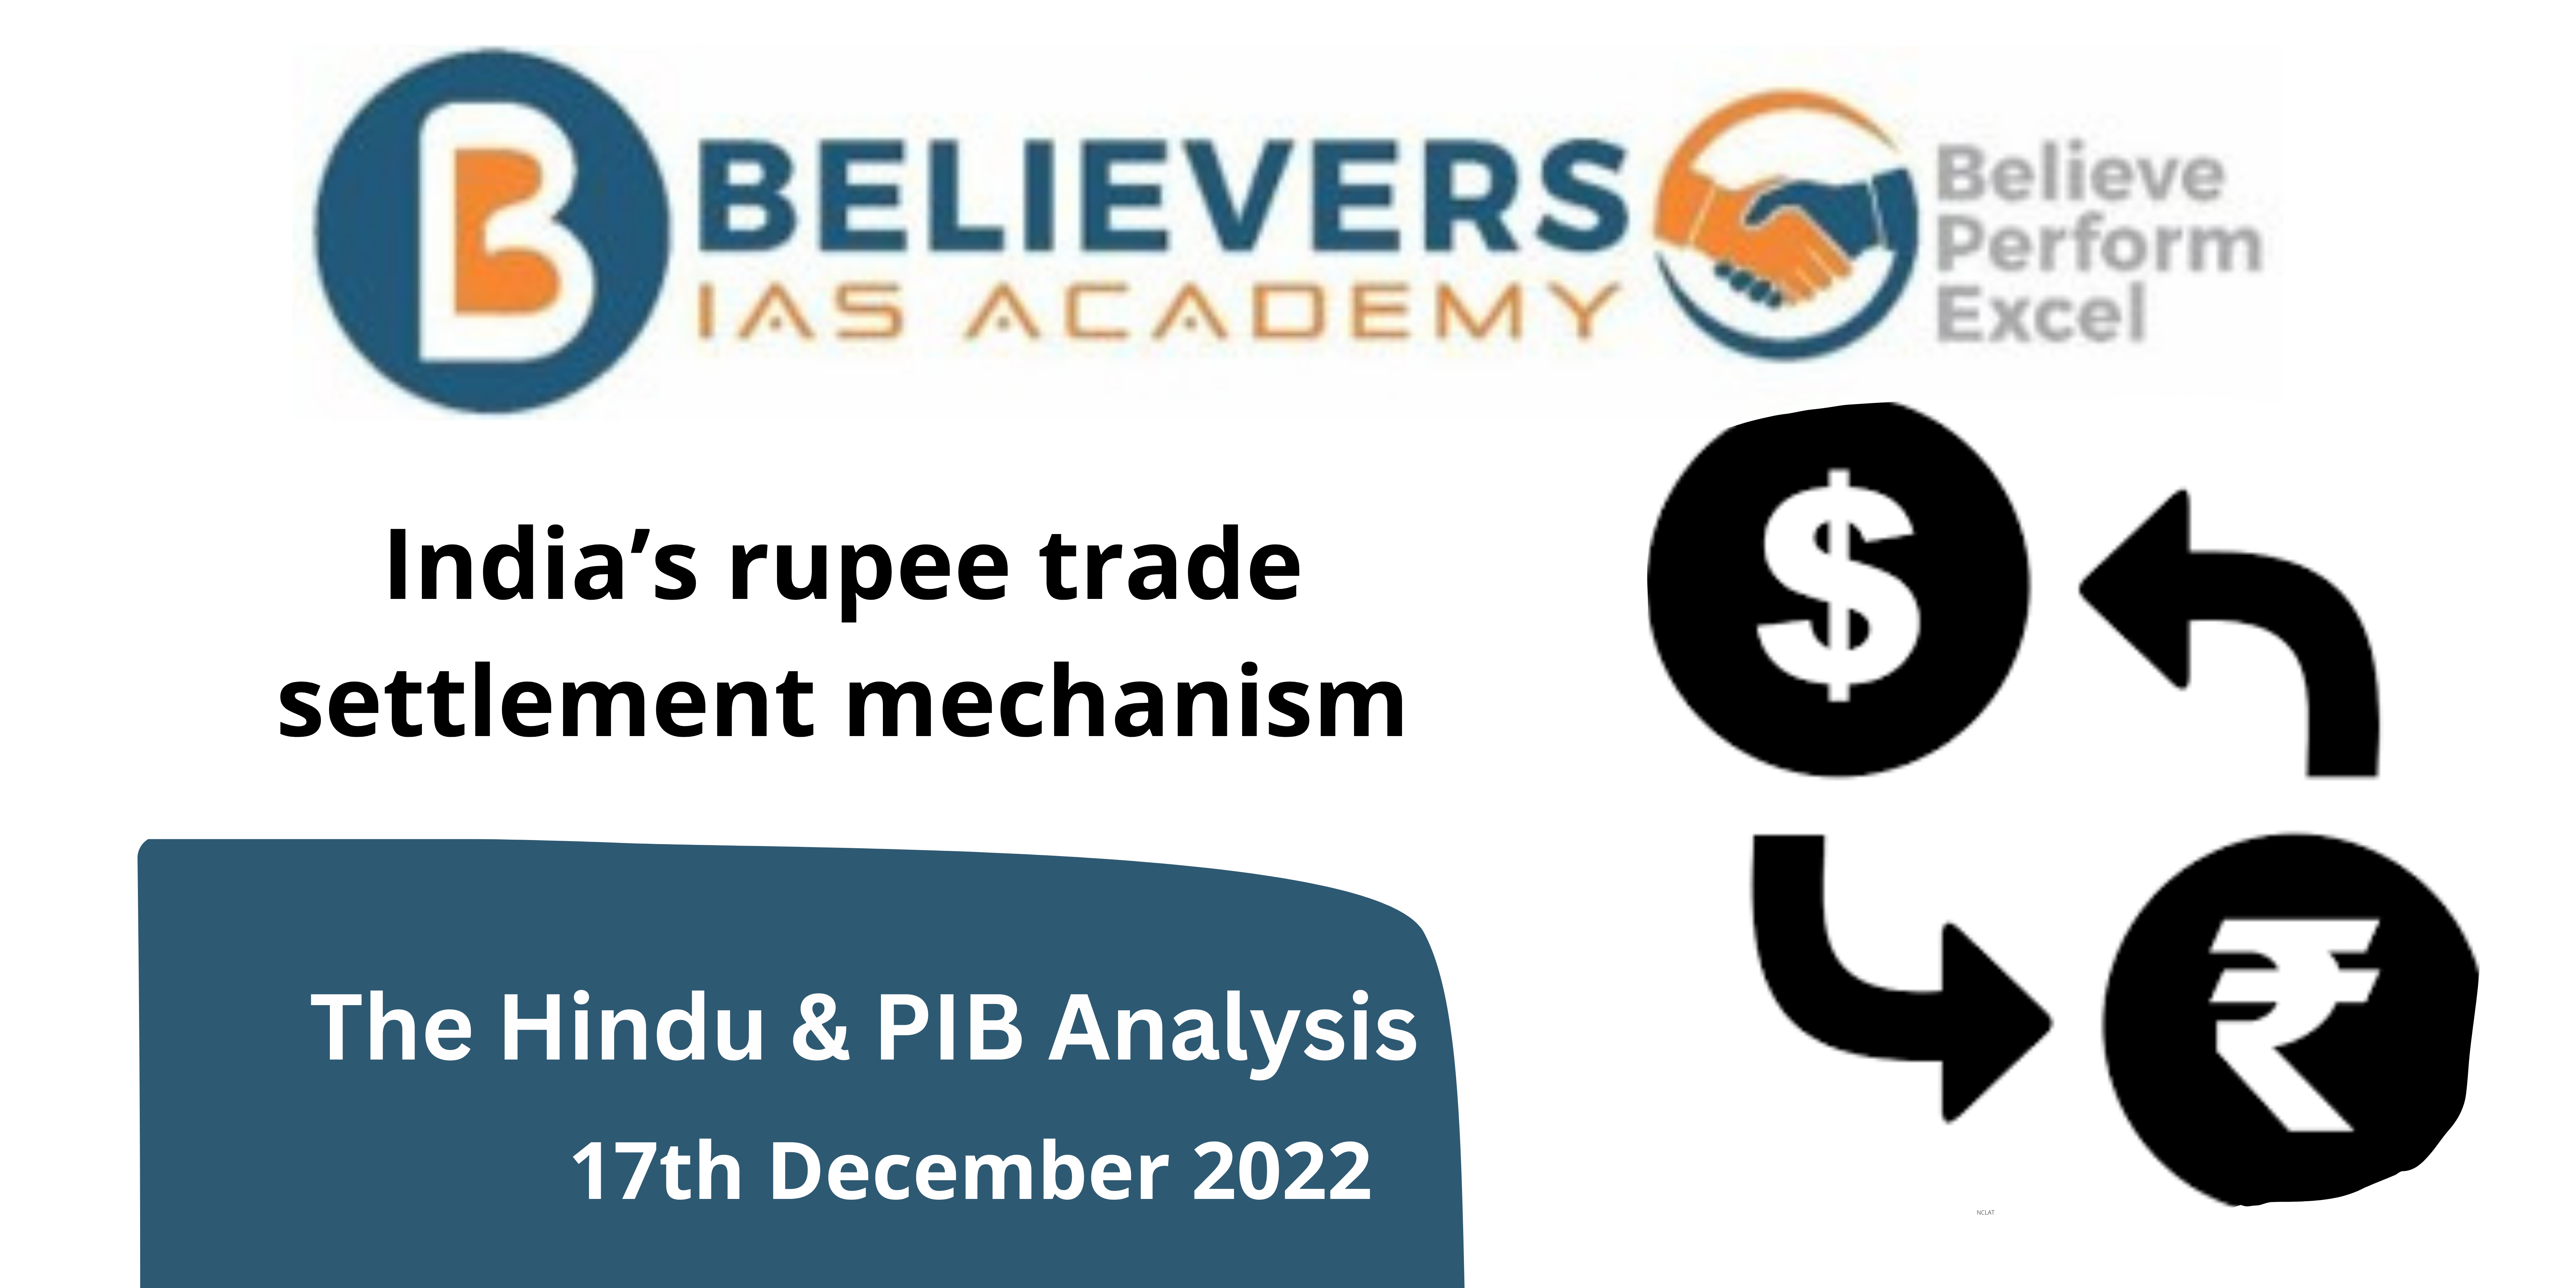 Rupee trade settlement mechanism